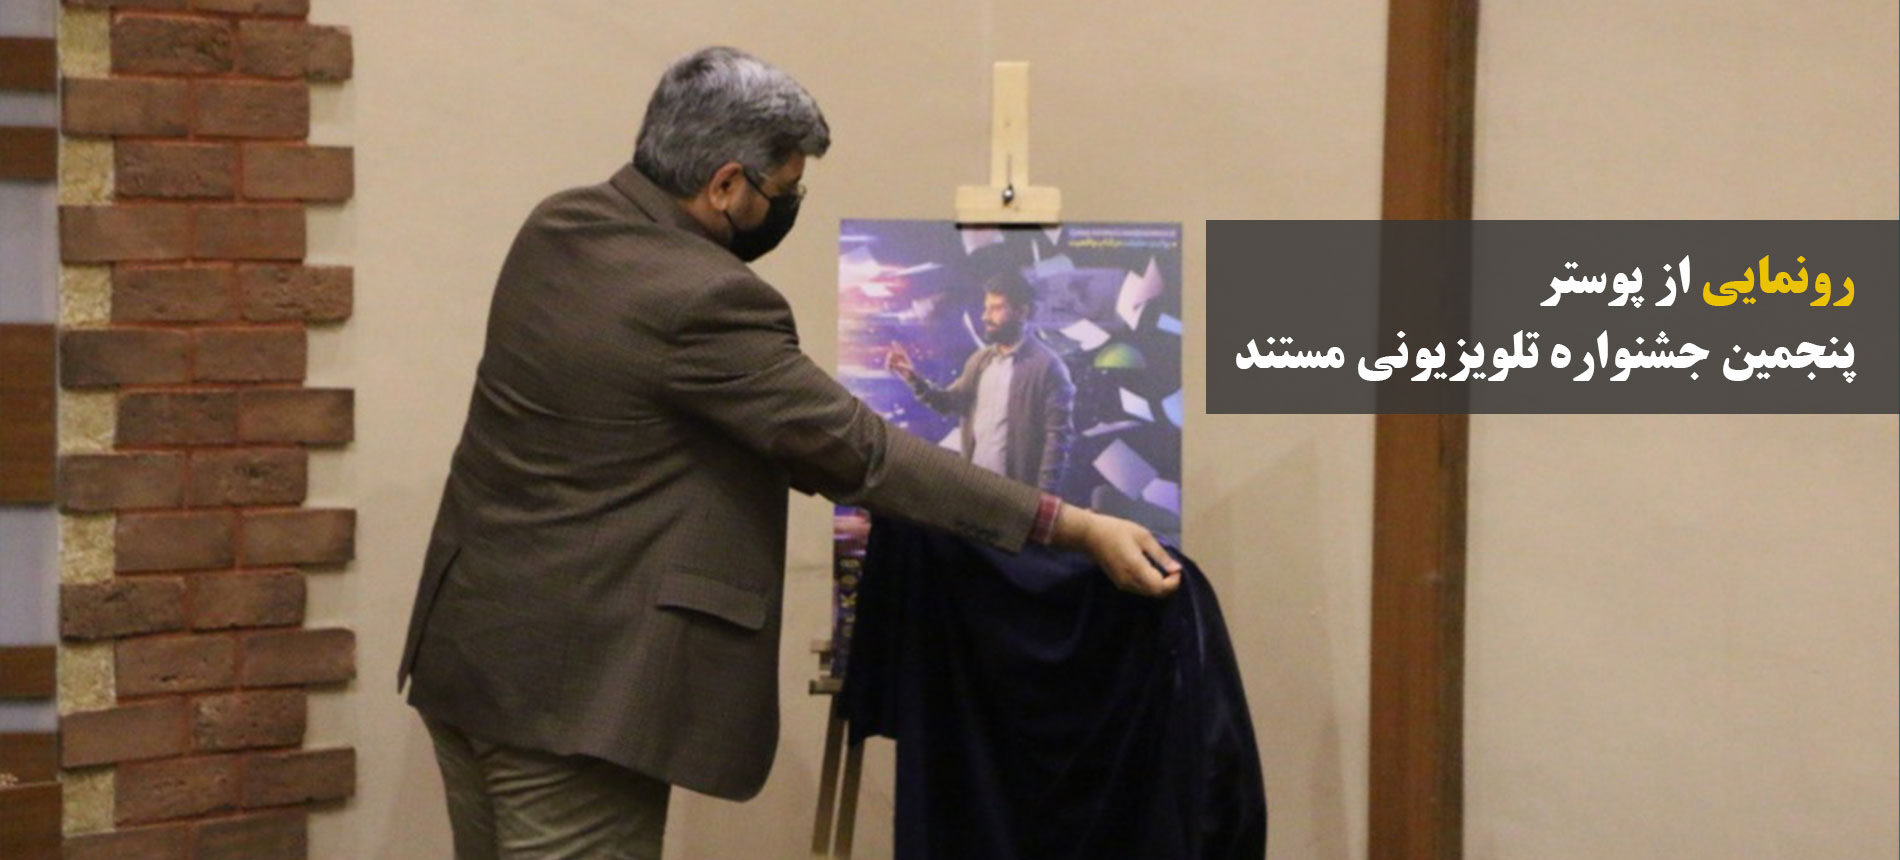 نشست خبری پنجمین جشنواره تلویزیونی مستند برگزار شد/ رونمایی از پوستر